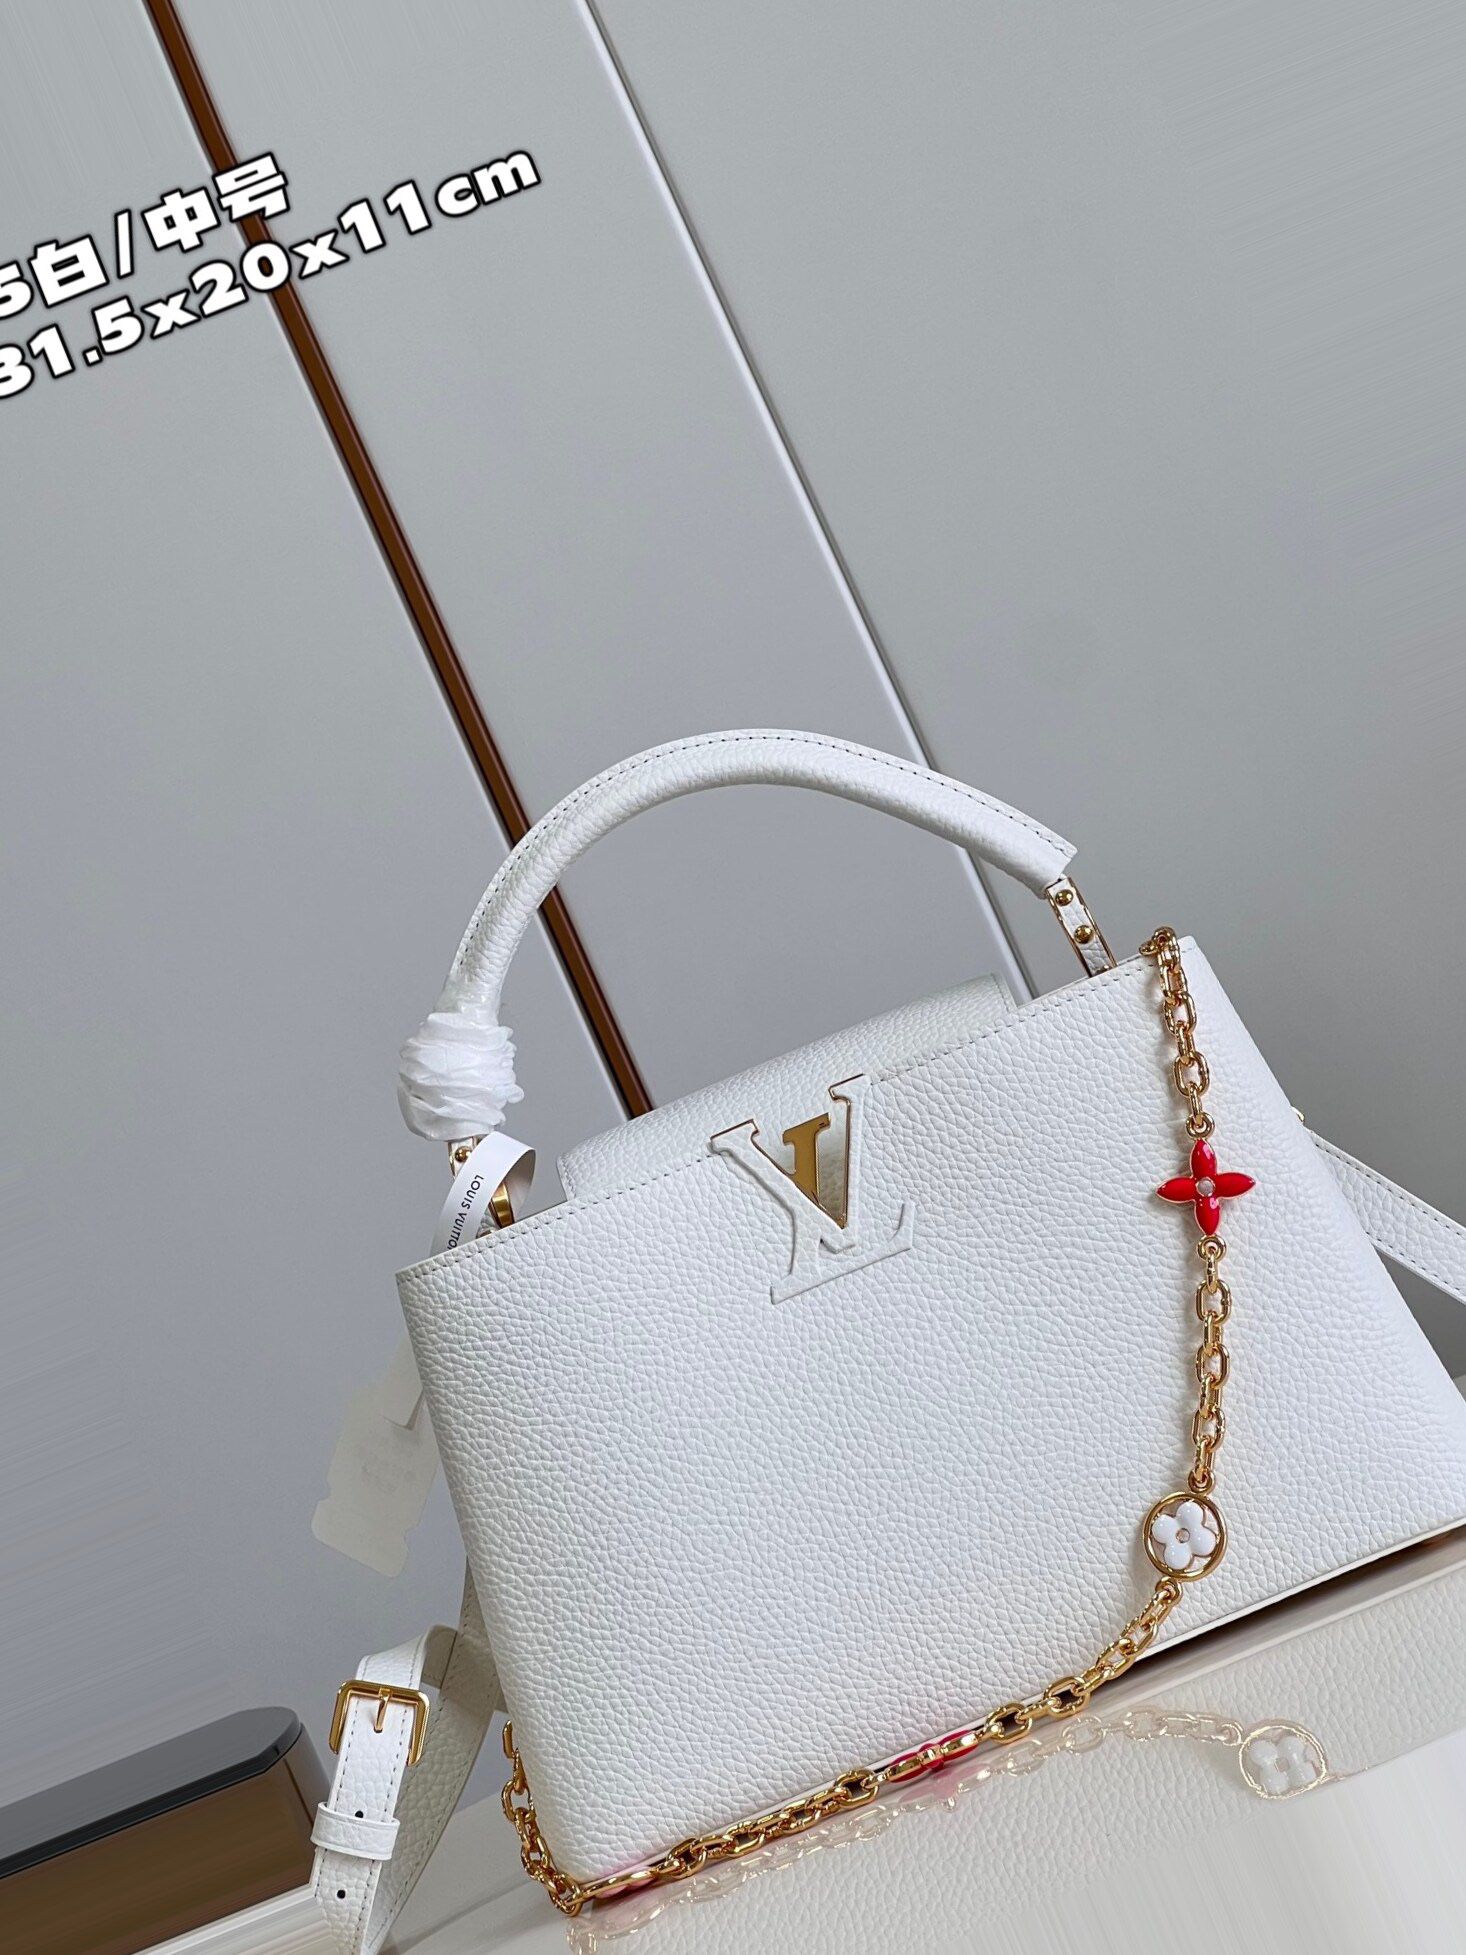 Trendy Louis Vuitton Capucines Satchel Bag for Sale in West